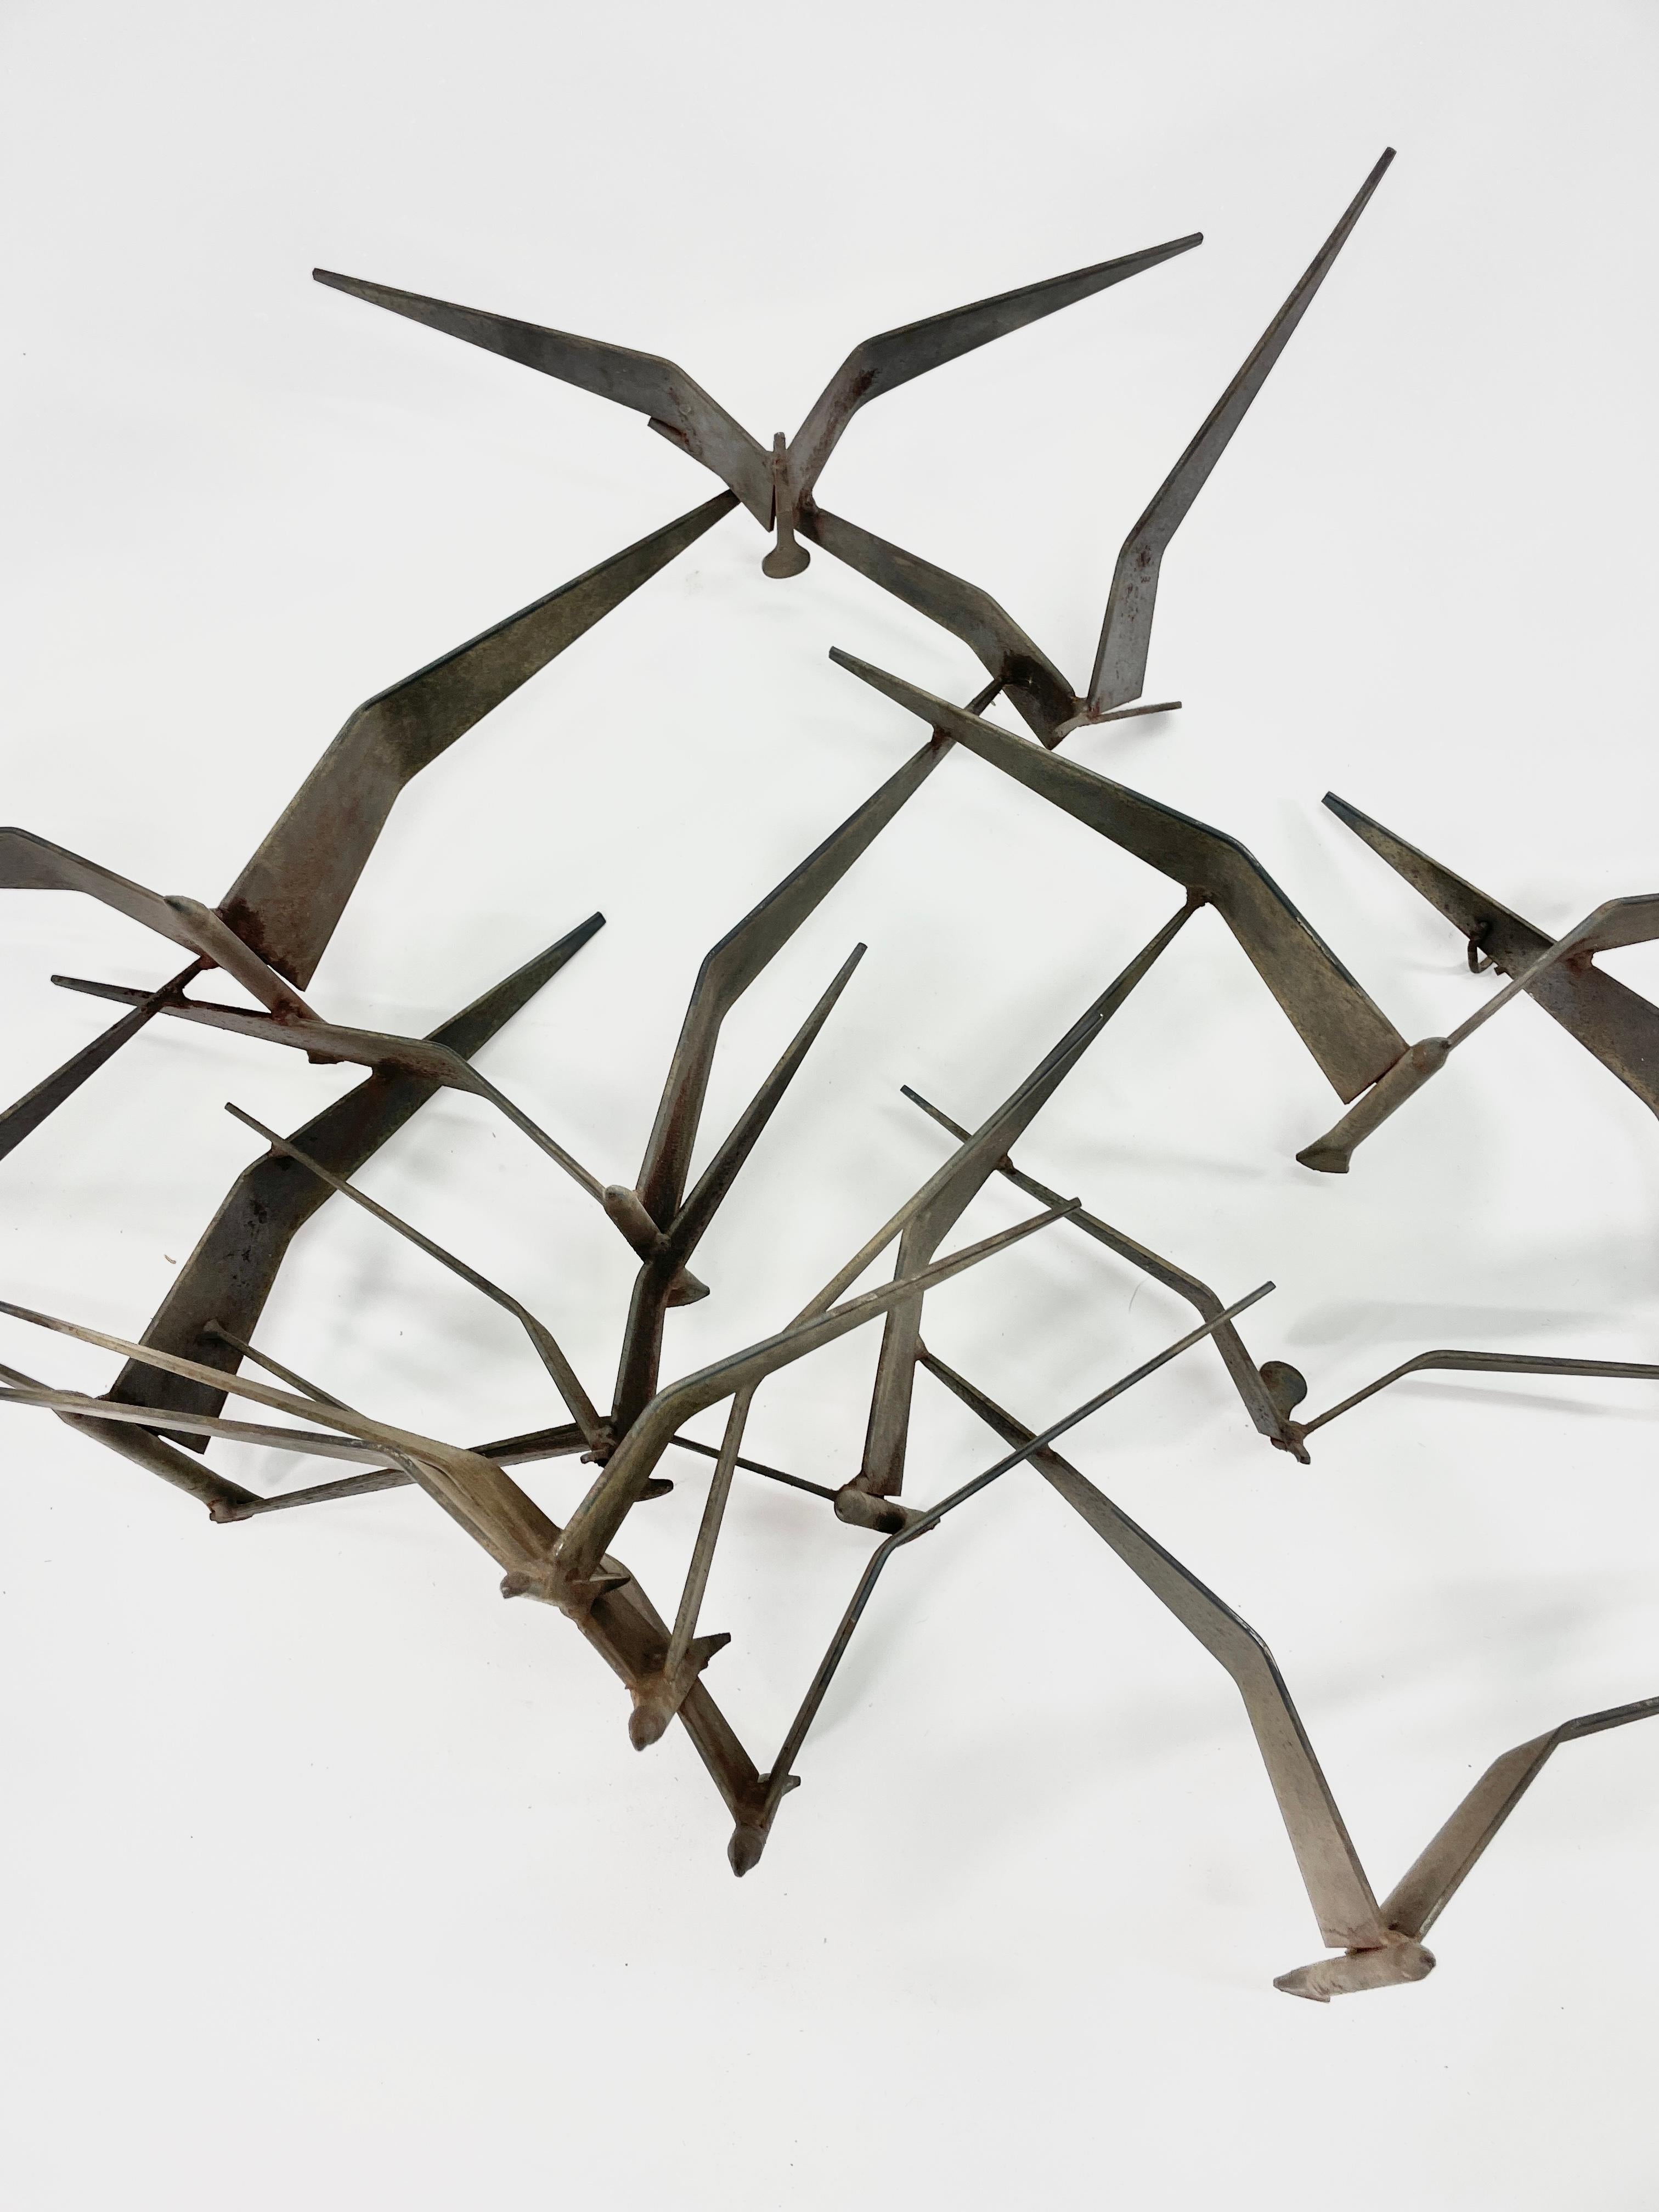  Diese unglaubliche Skulptur  eines Schwarmes fliegender Vögel mit Flügeln, Schnabel und Körperdetails. Diese Skulptur verleiht einer Wand Tiefe und Bewegung und ist ein großartiges Beispiel des Künstlers Curtis Jere. Ein wunderschönes skulpturales